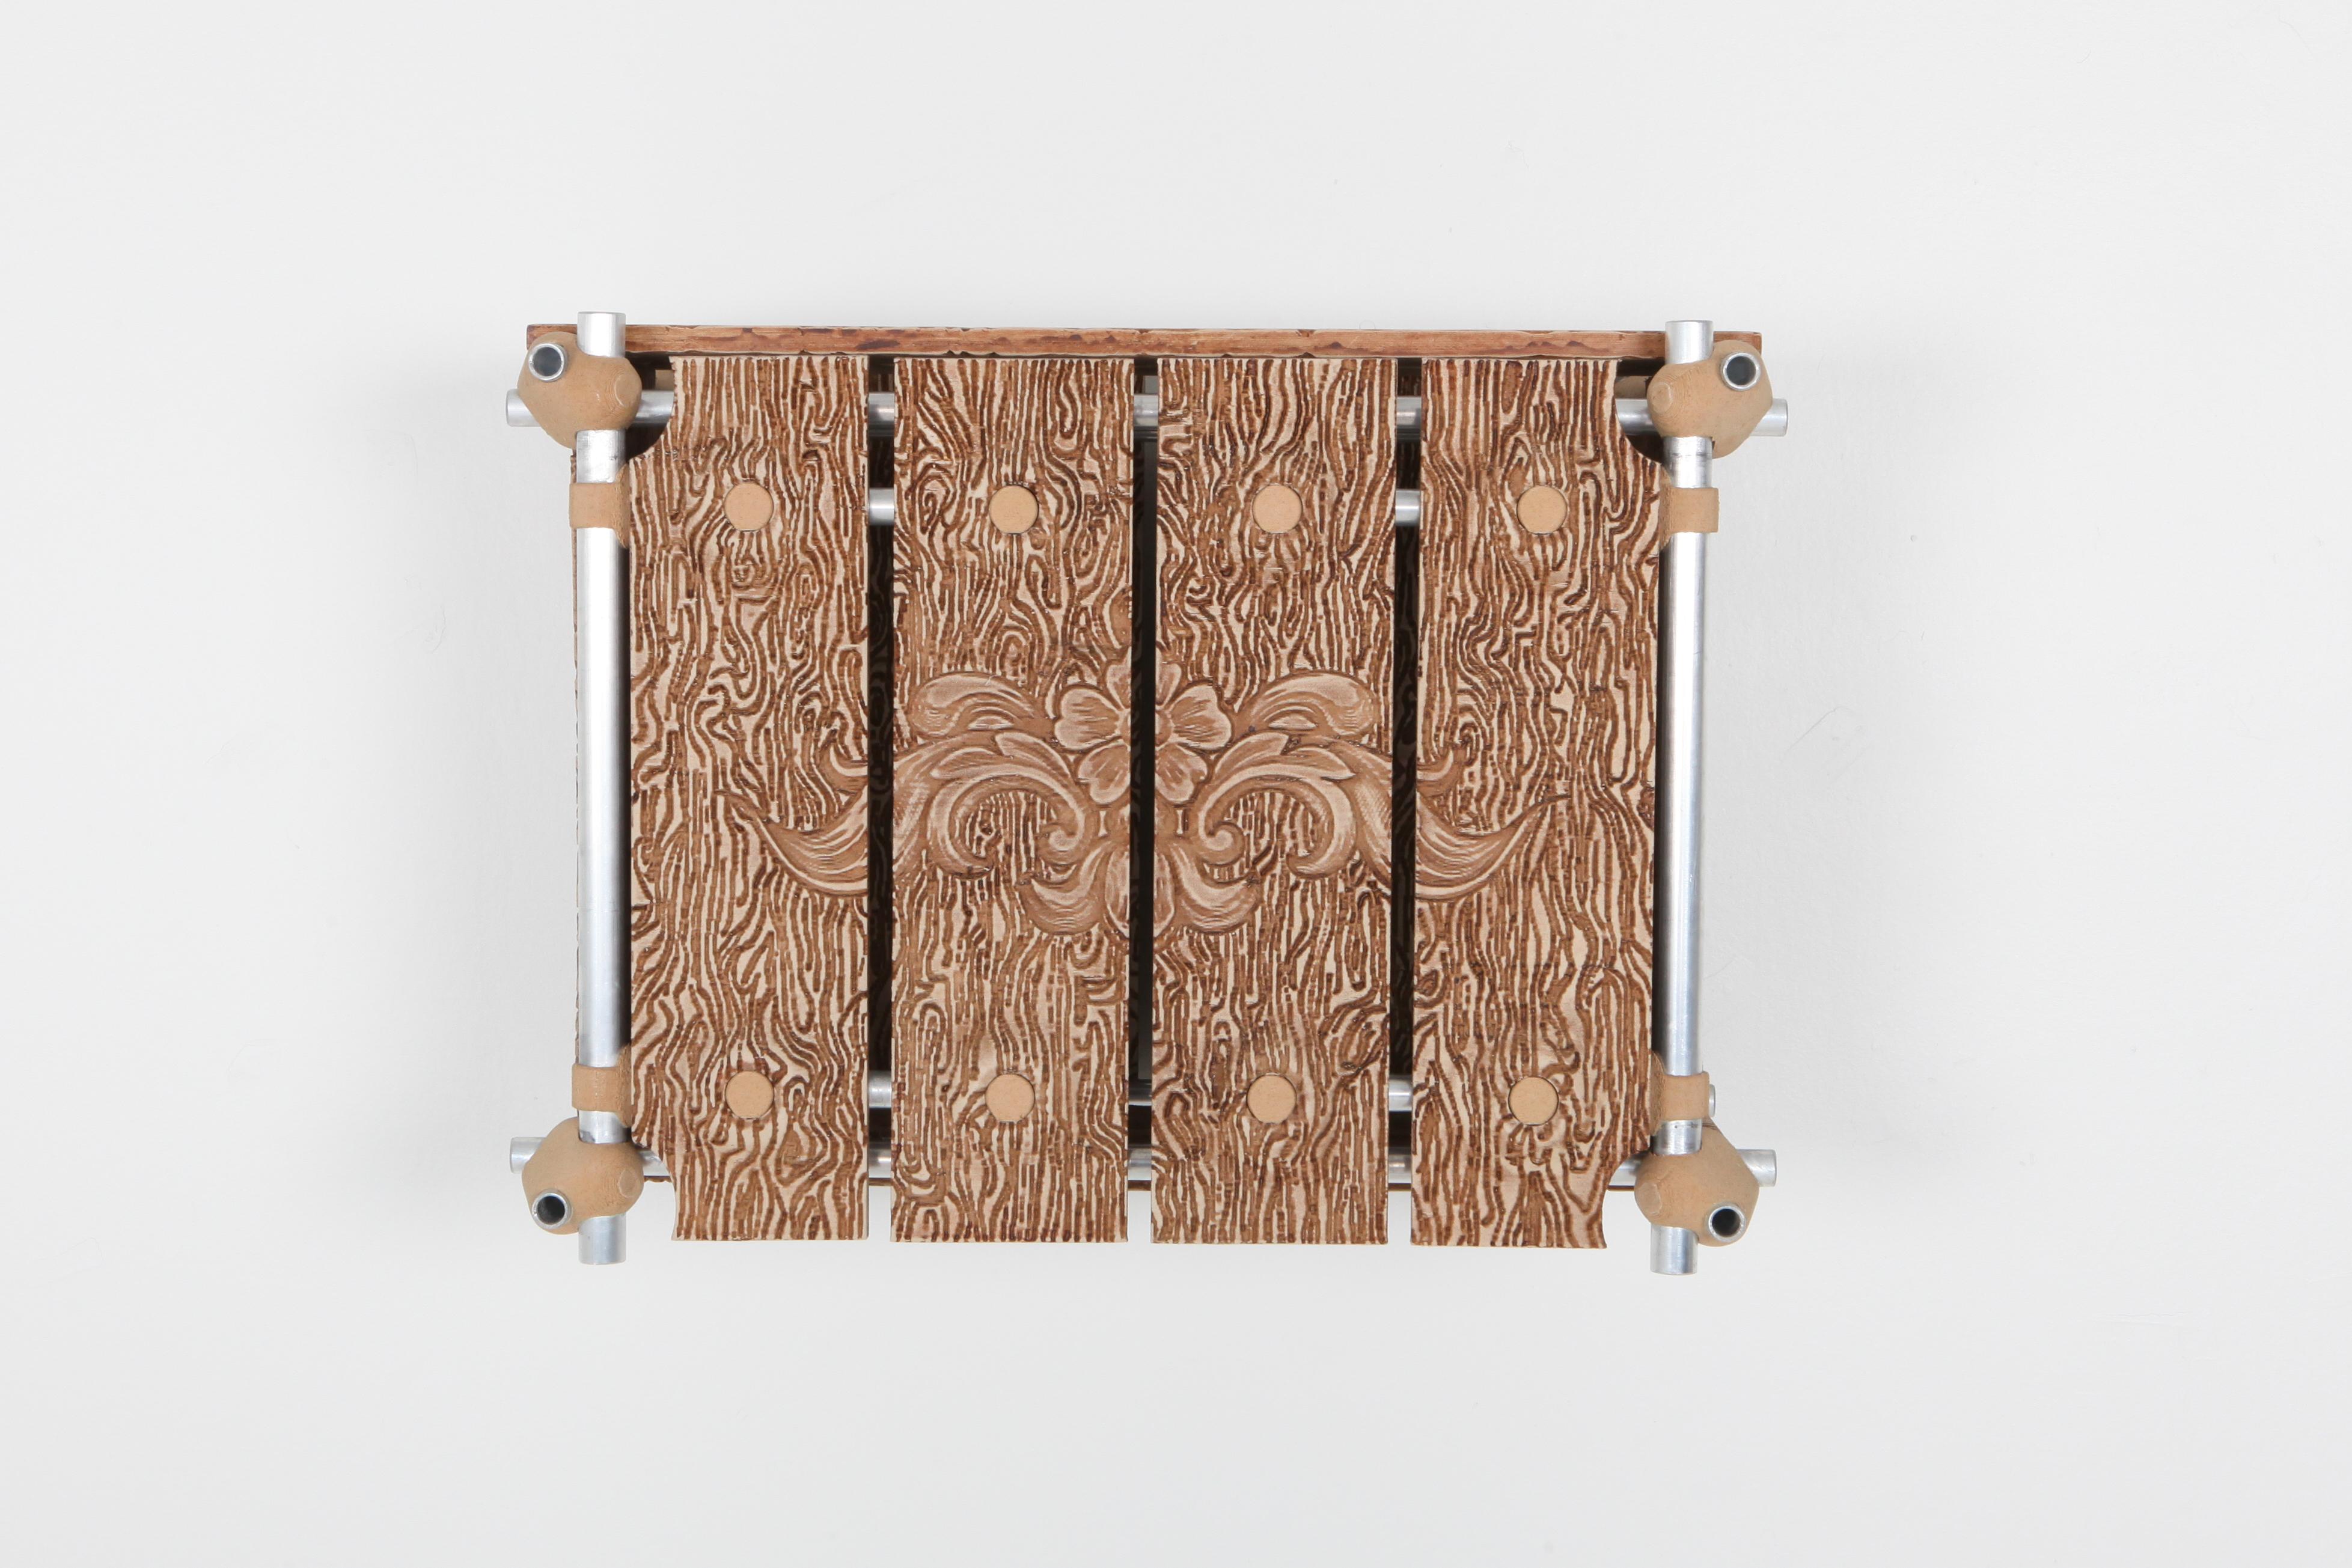 Funktionale Kunst trifft auf zeitgenössisches Design mit dem Rosewood Cabinet